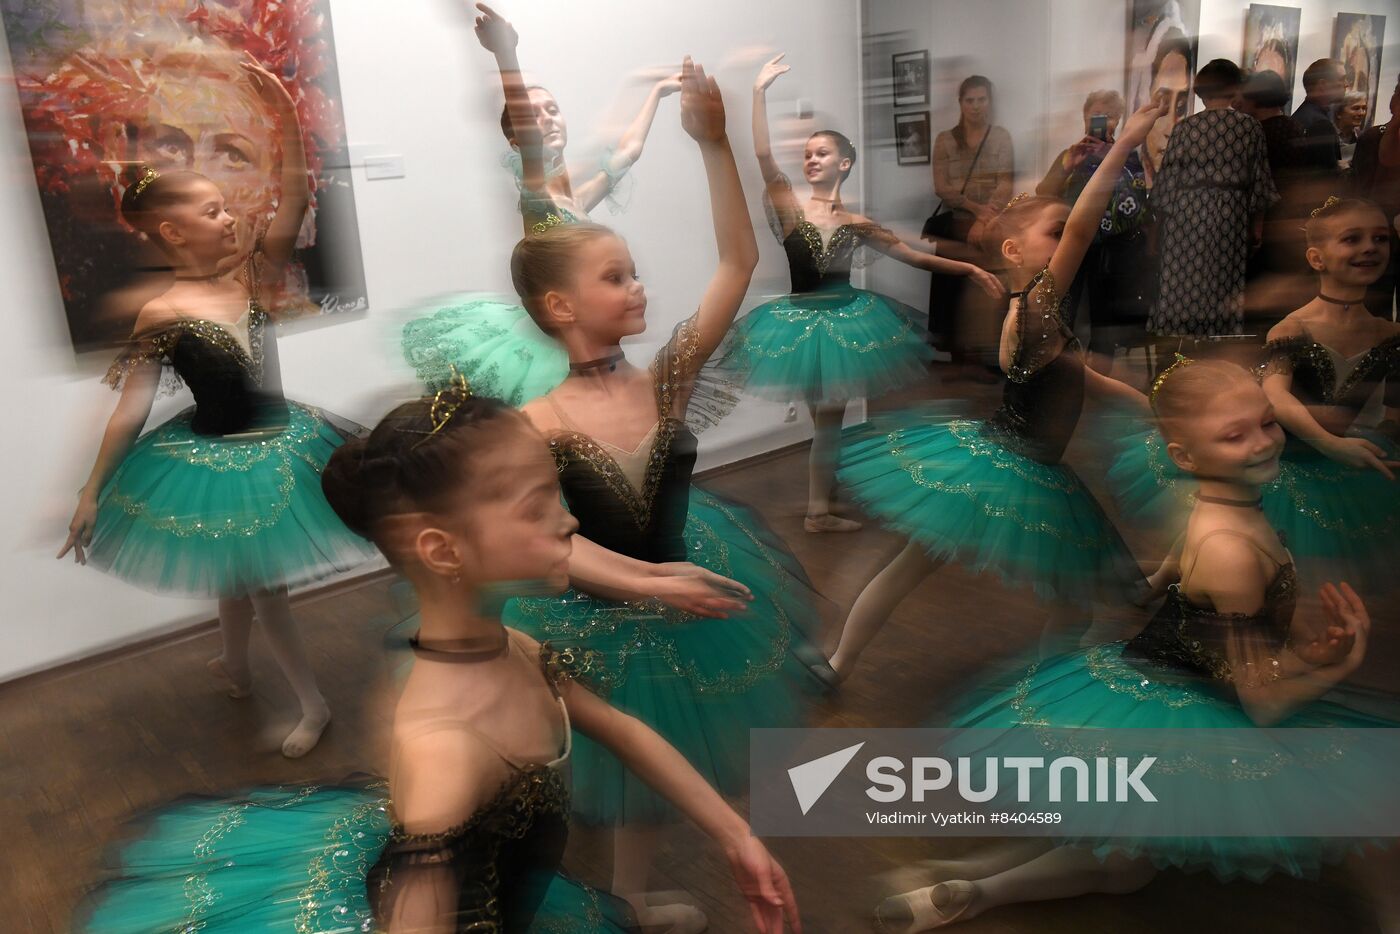 Russia Ballet Golovkina Exhibition